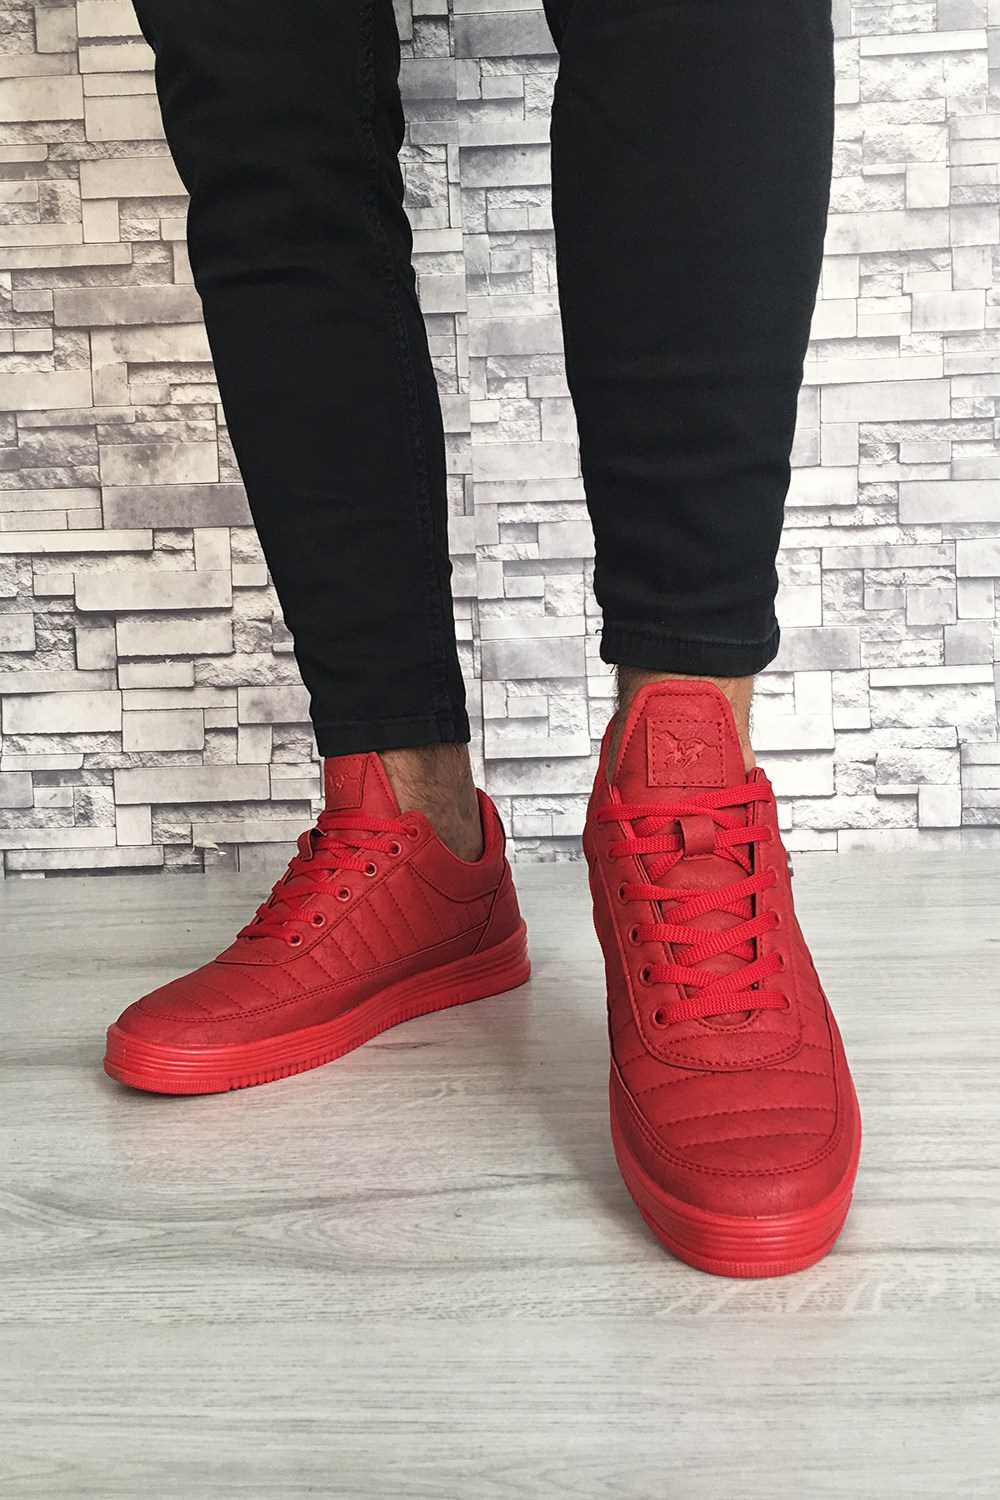 Erkek Yüksek Taban Sneakers Spor Ayakkabı Kırmızı